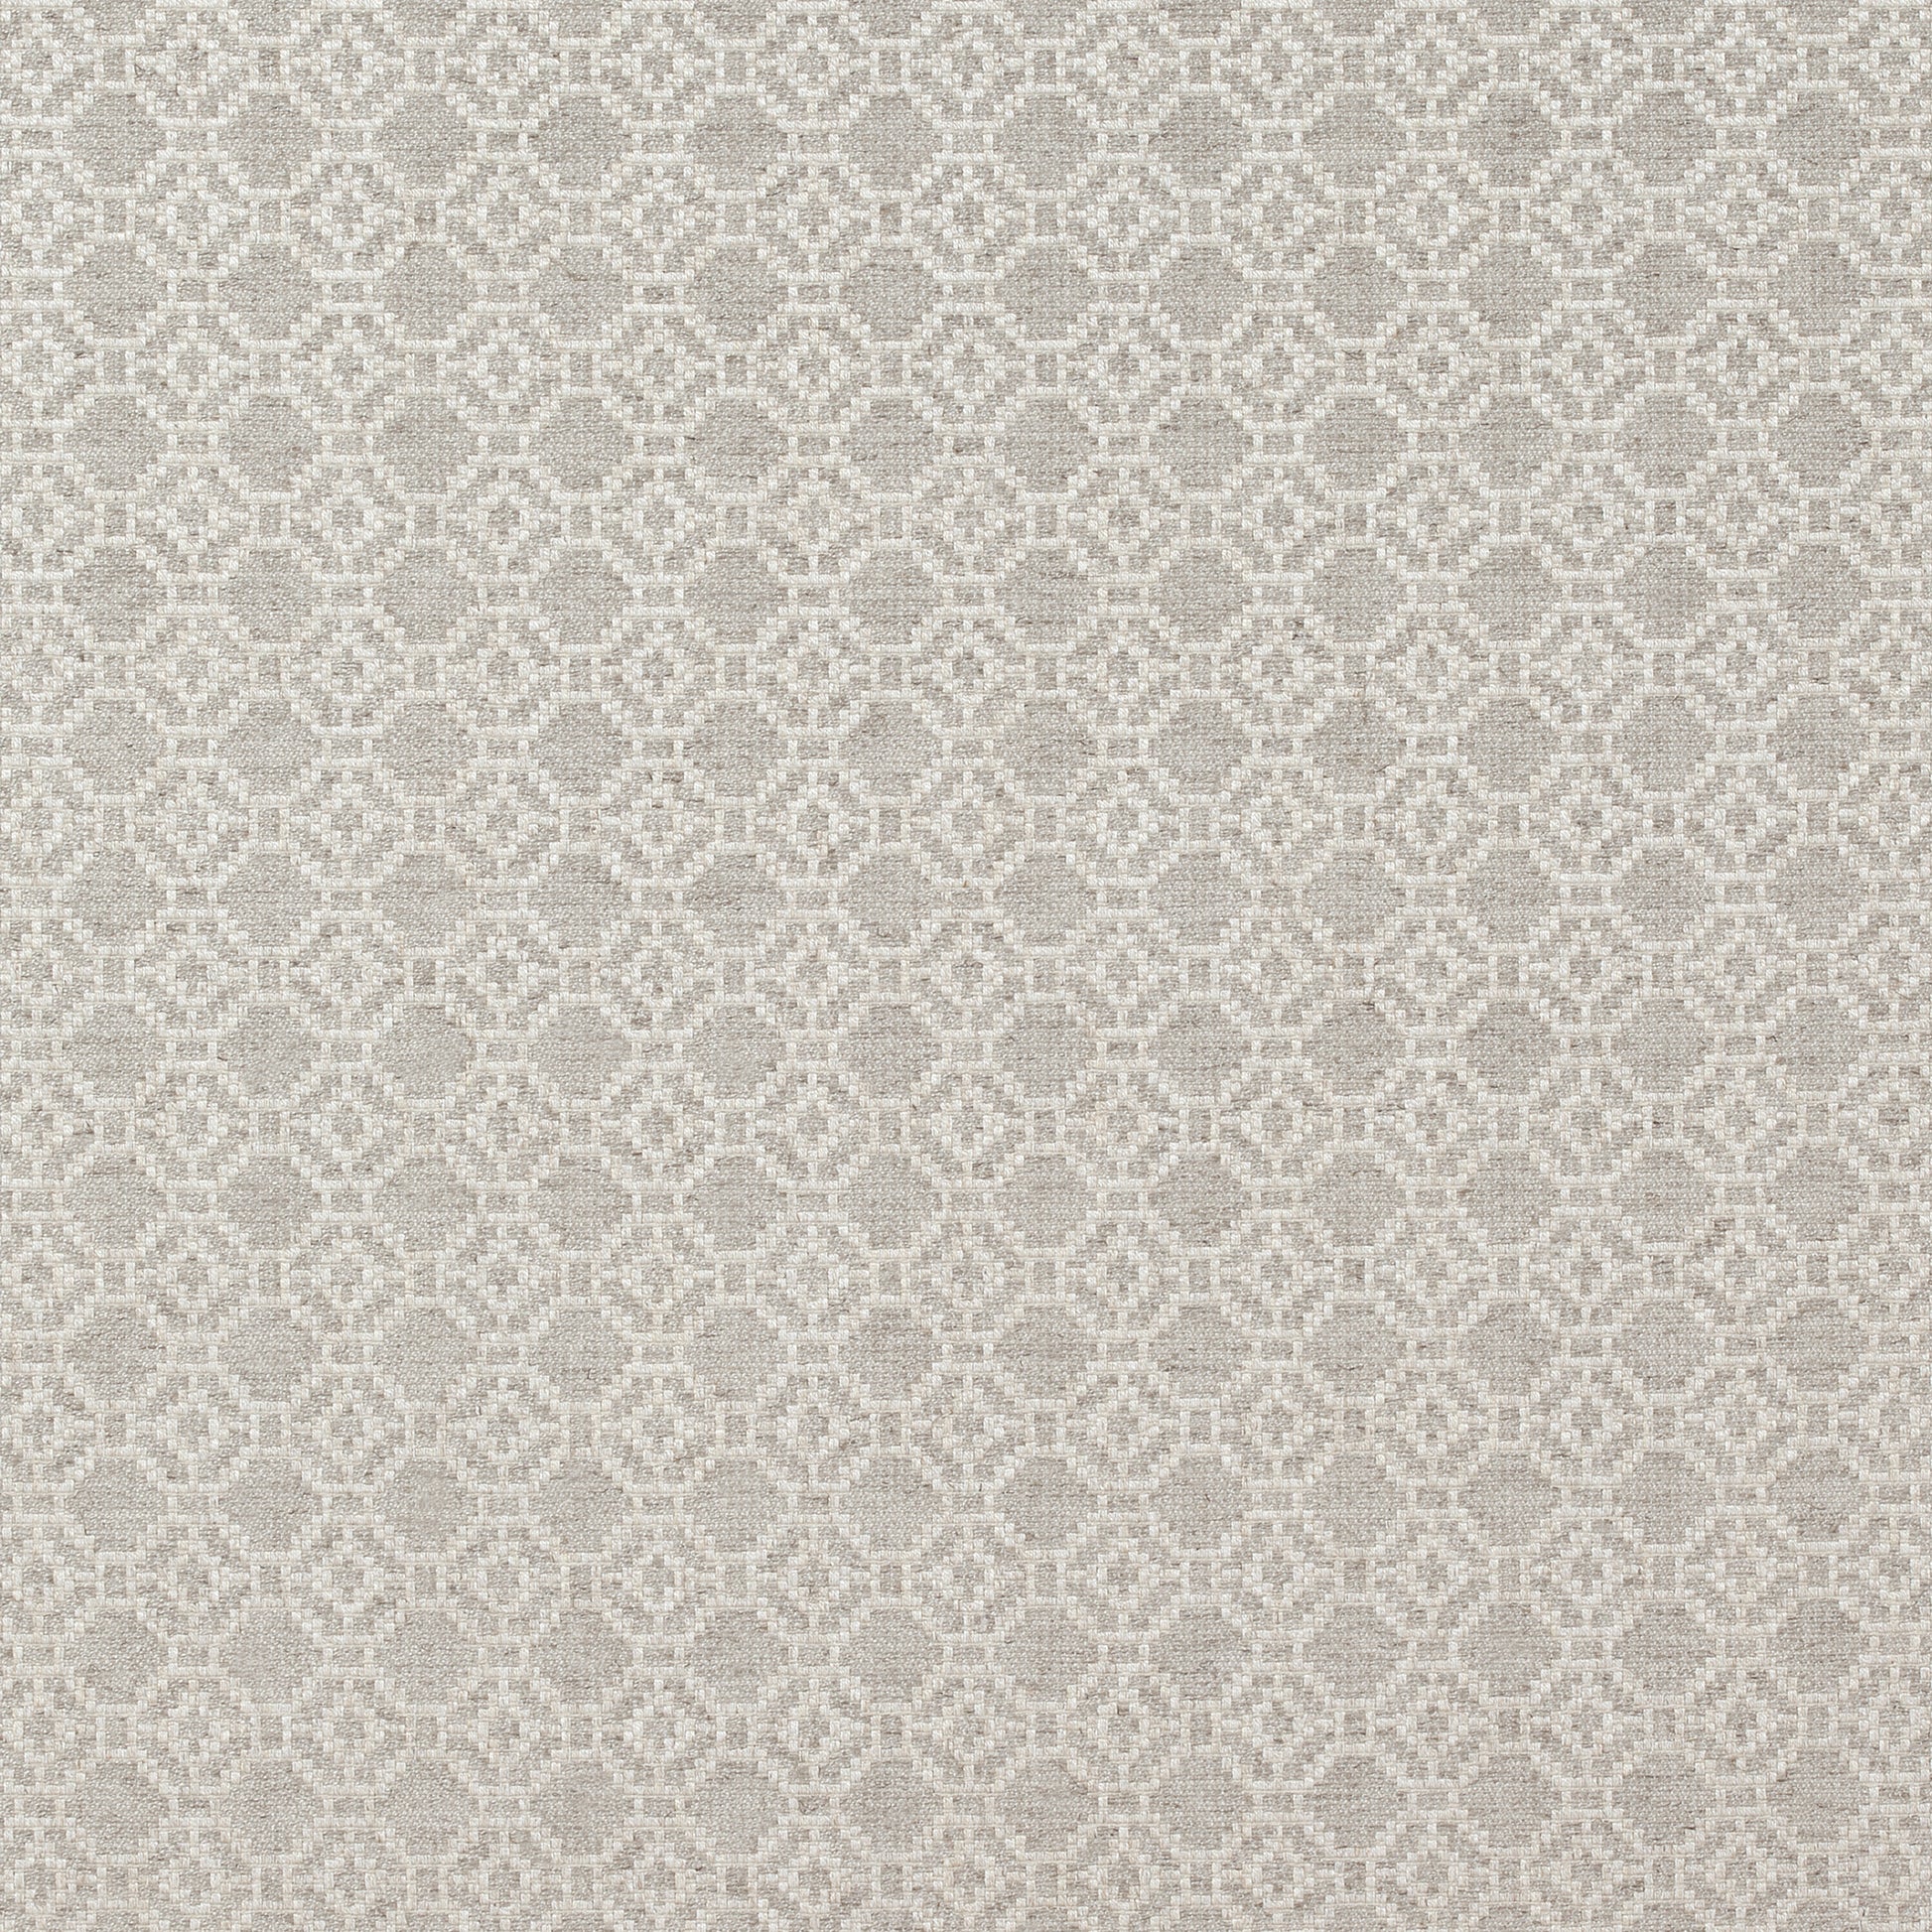 Purchase  Ann French Fabric Pattern# AW73040  pattern name  Amalfi